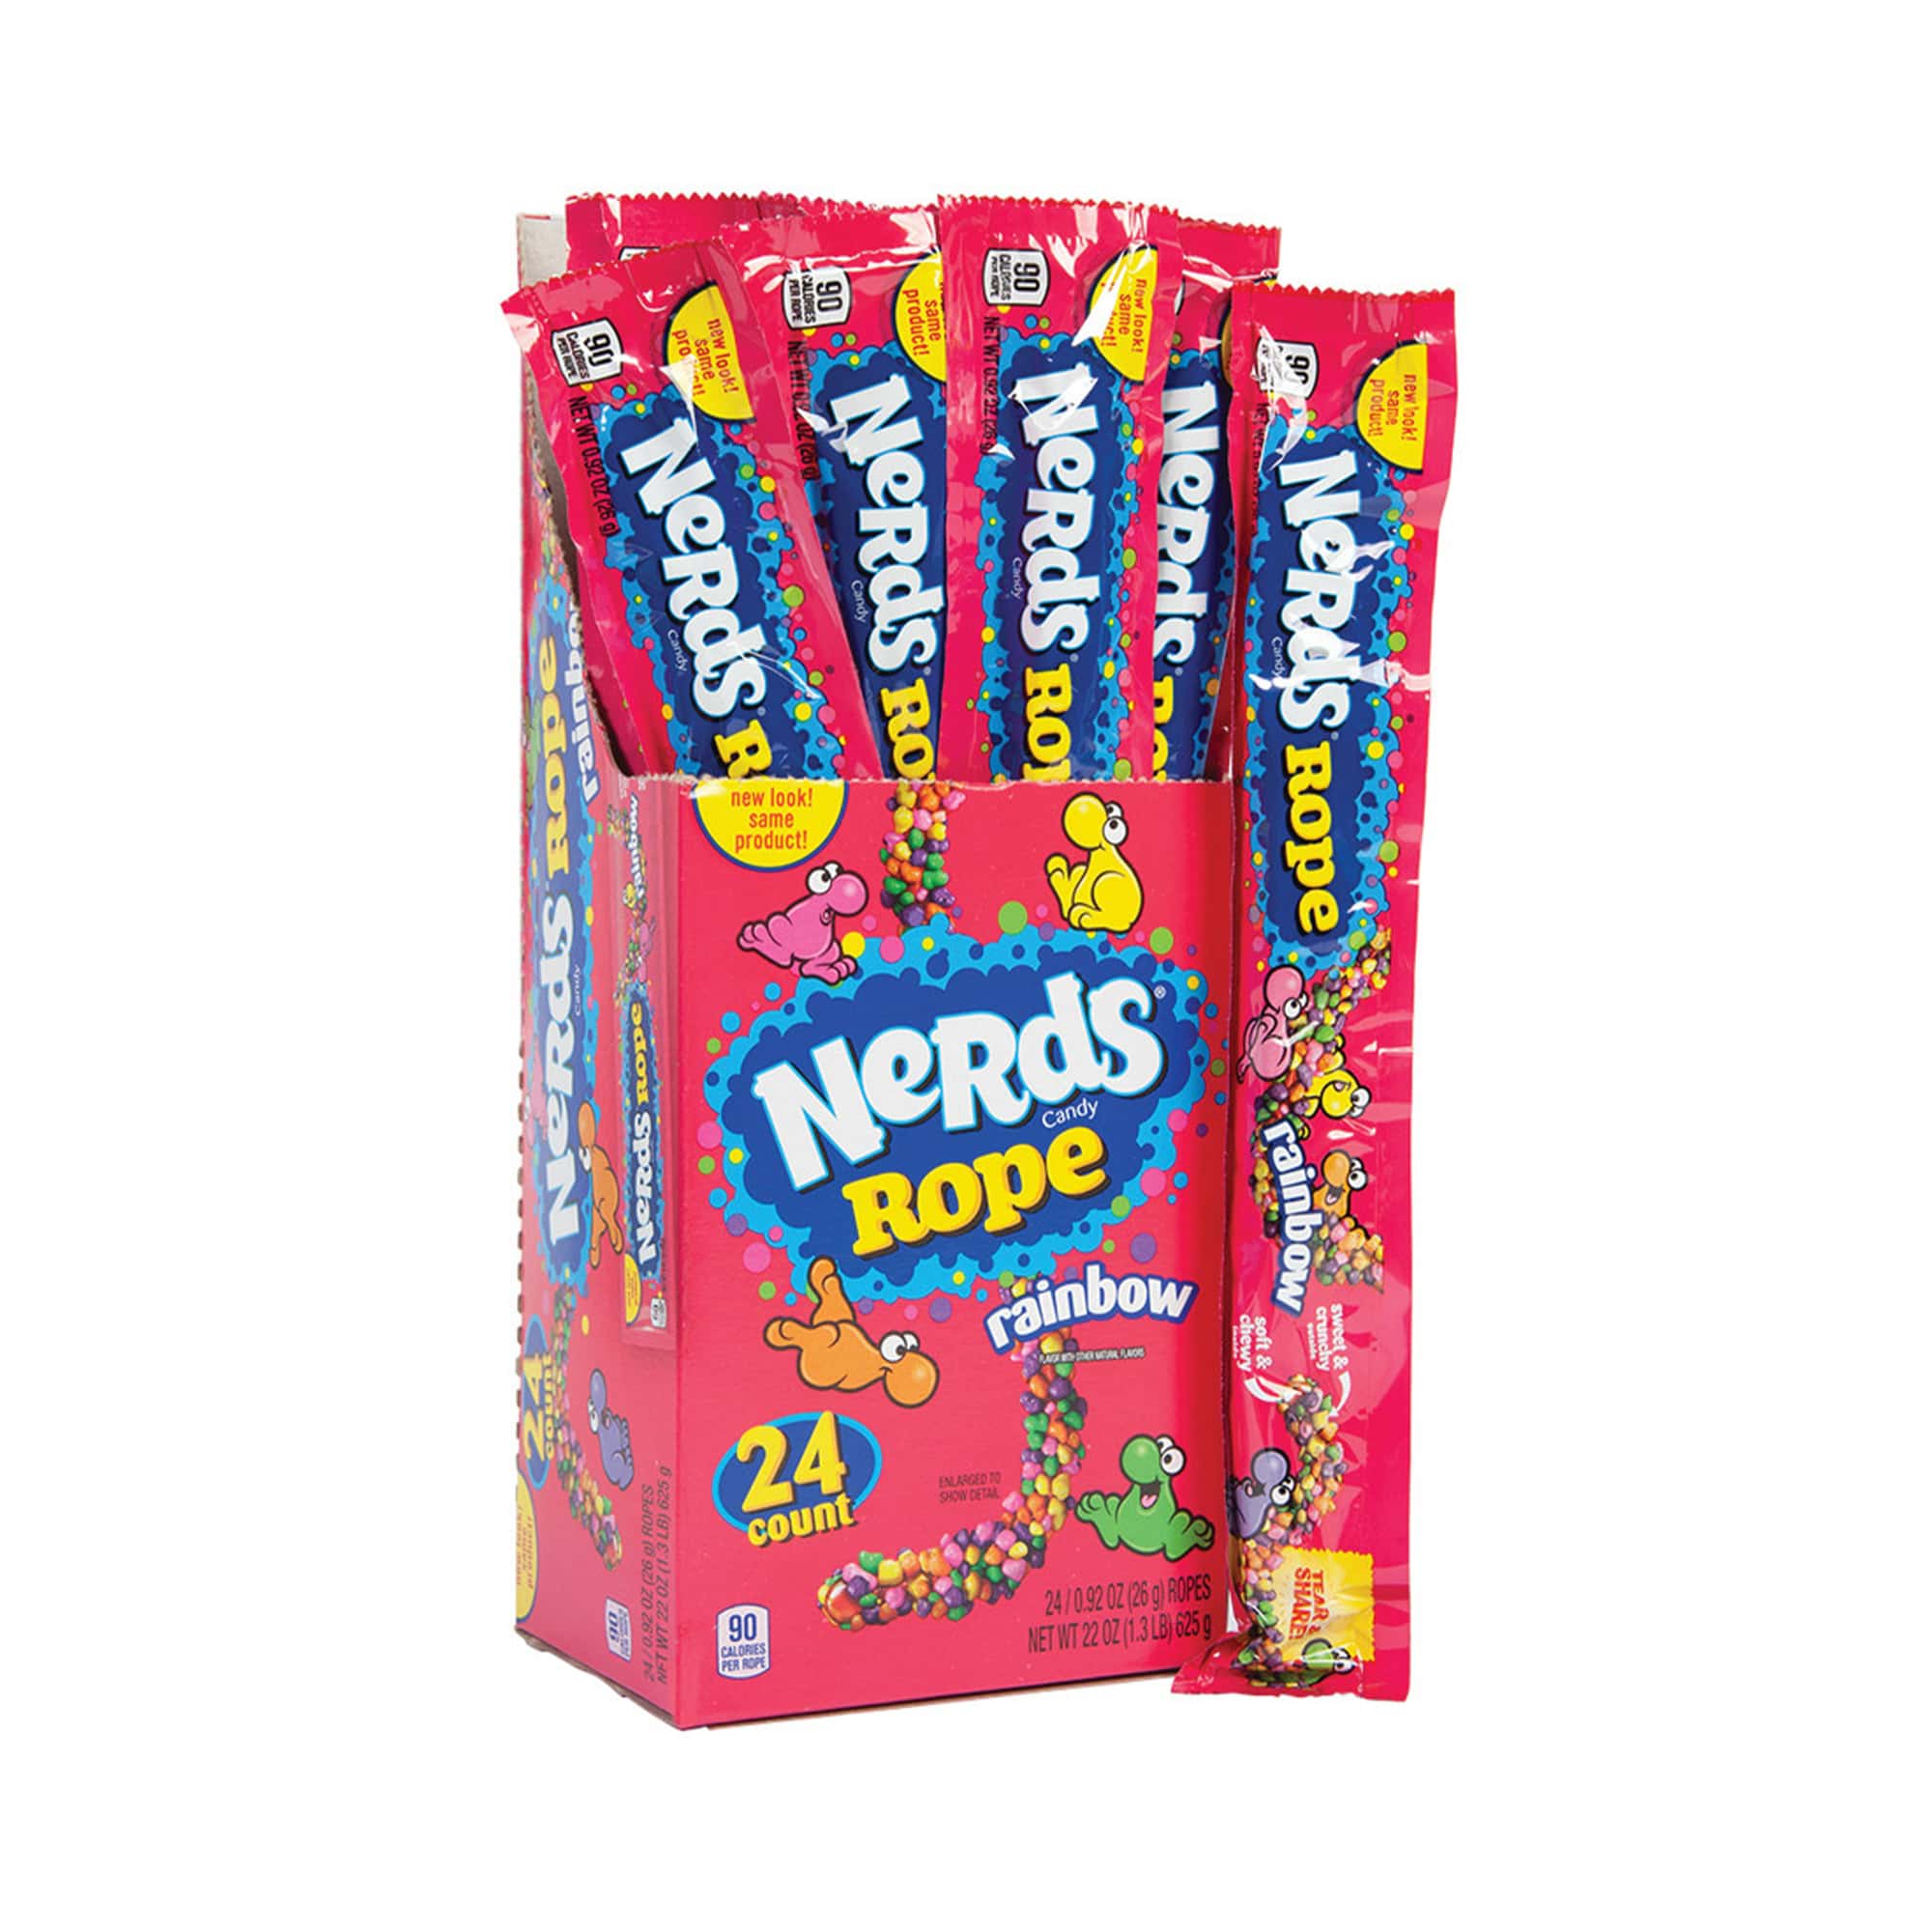 Nerds Rope Rainbow 26g – 24 Pack - American Sweet Box